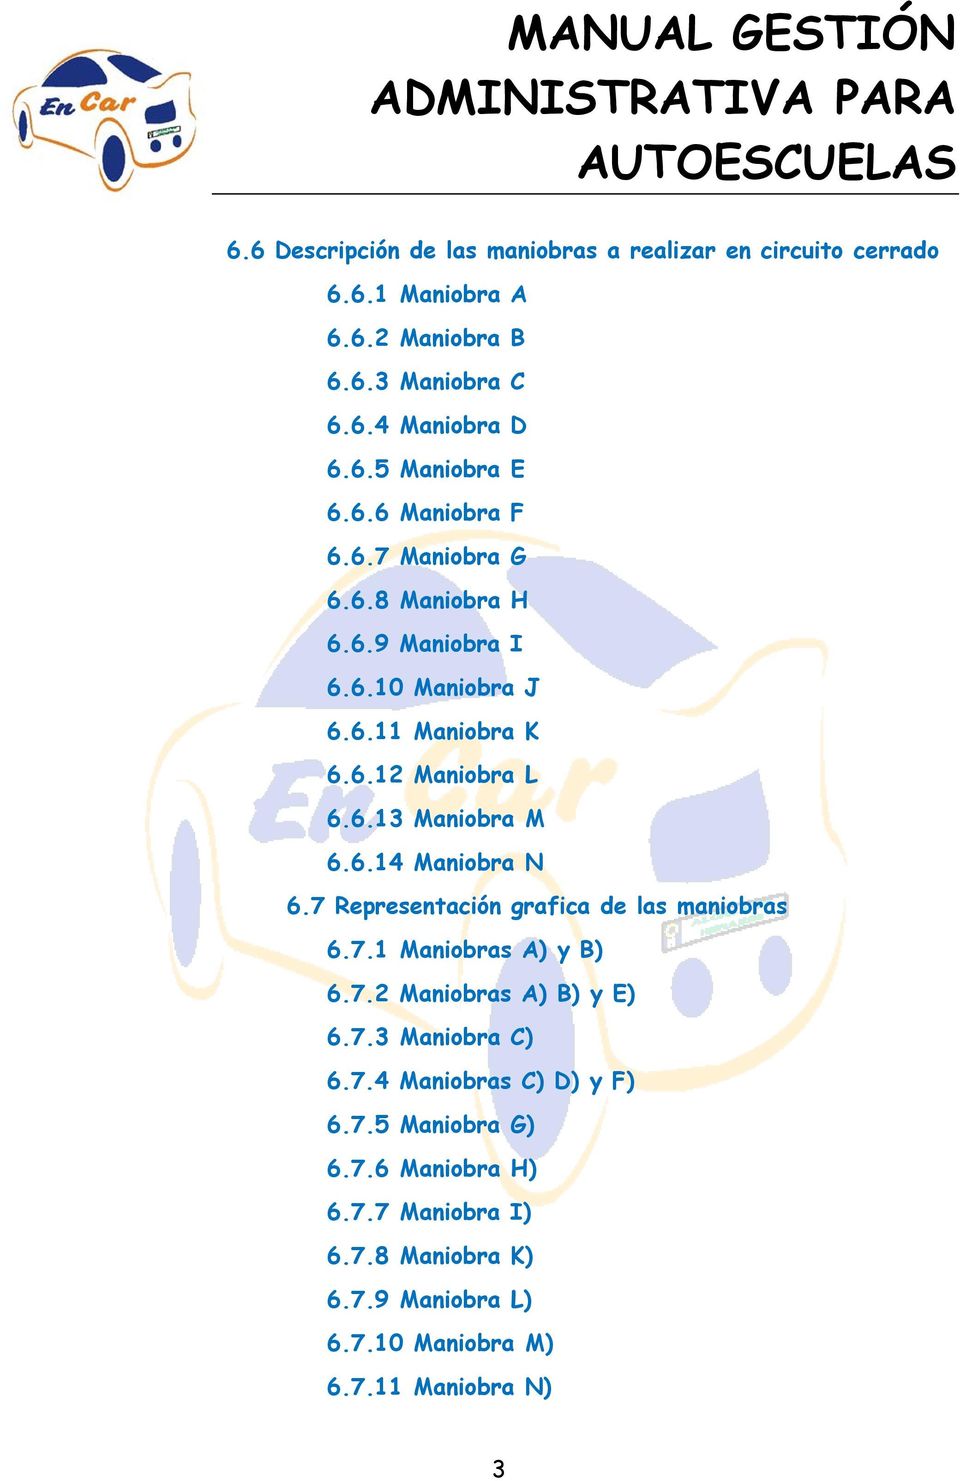 6.14 Manibra N 6.7 Representación grafica de las manibras 6.7.1 Manibras A) y B) 6.7.2 Manibras A) B) y E) 6.7.3 Manibra C) 6.7.4 Manibras C) D) y F) 6.